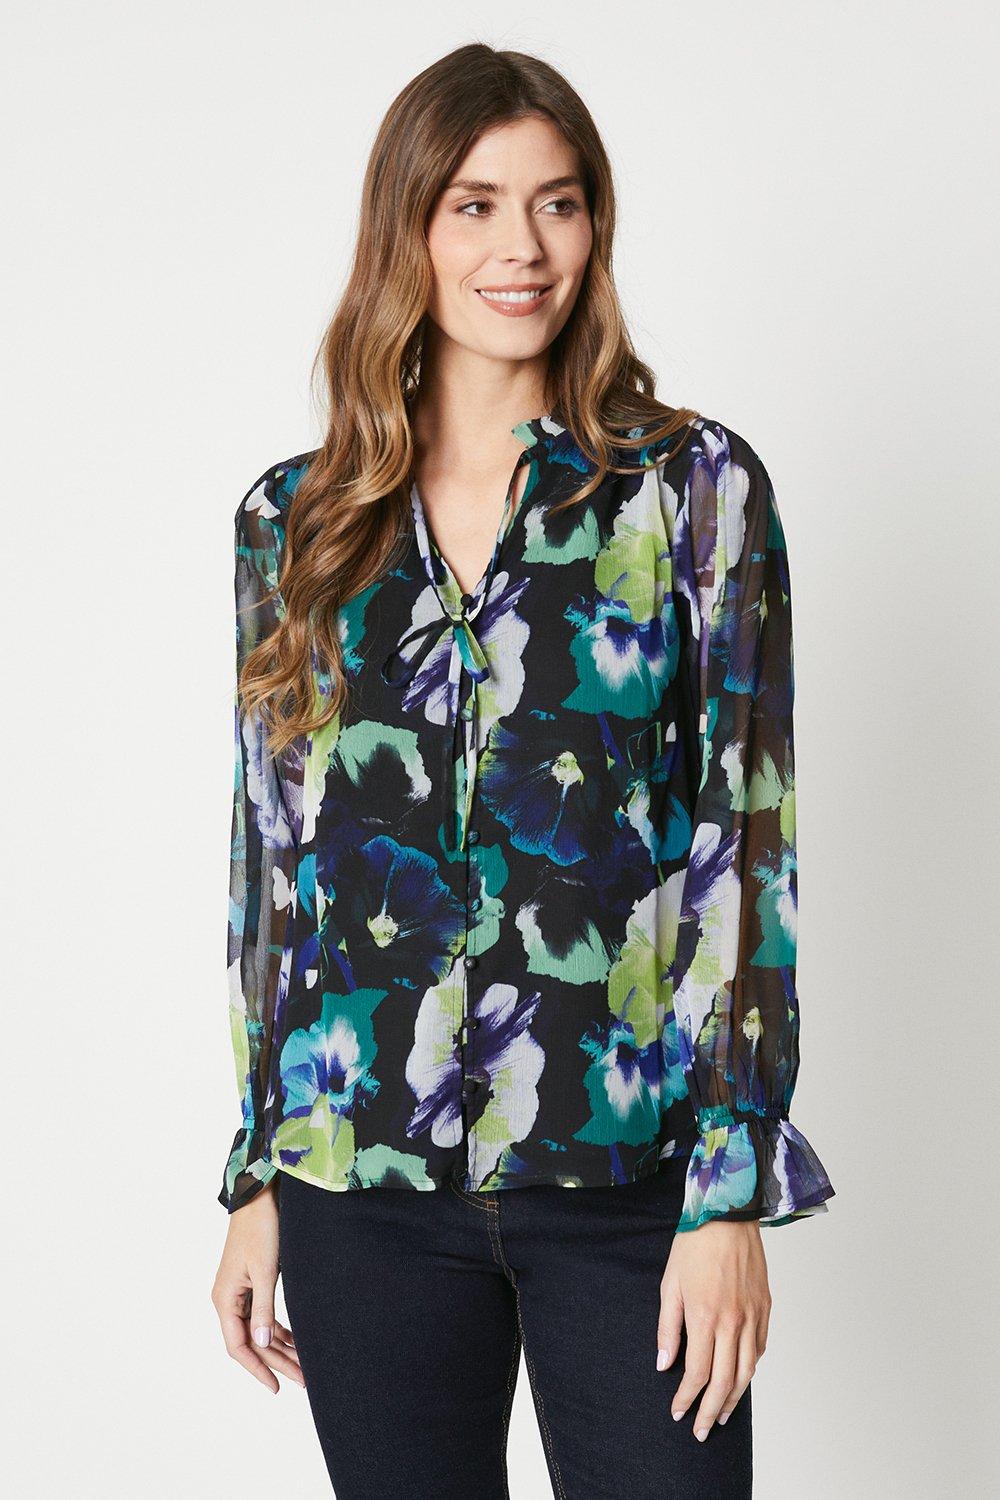 Шифоновая блузка с цветочным принтом и завязками на шее в стиле бохо Wallis, черный 2020 новый для женщин шифоновая блузка футболка элегантное платье с v образной горловиной и цветочным рисунком пуловер футболка для женщин